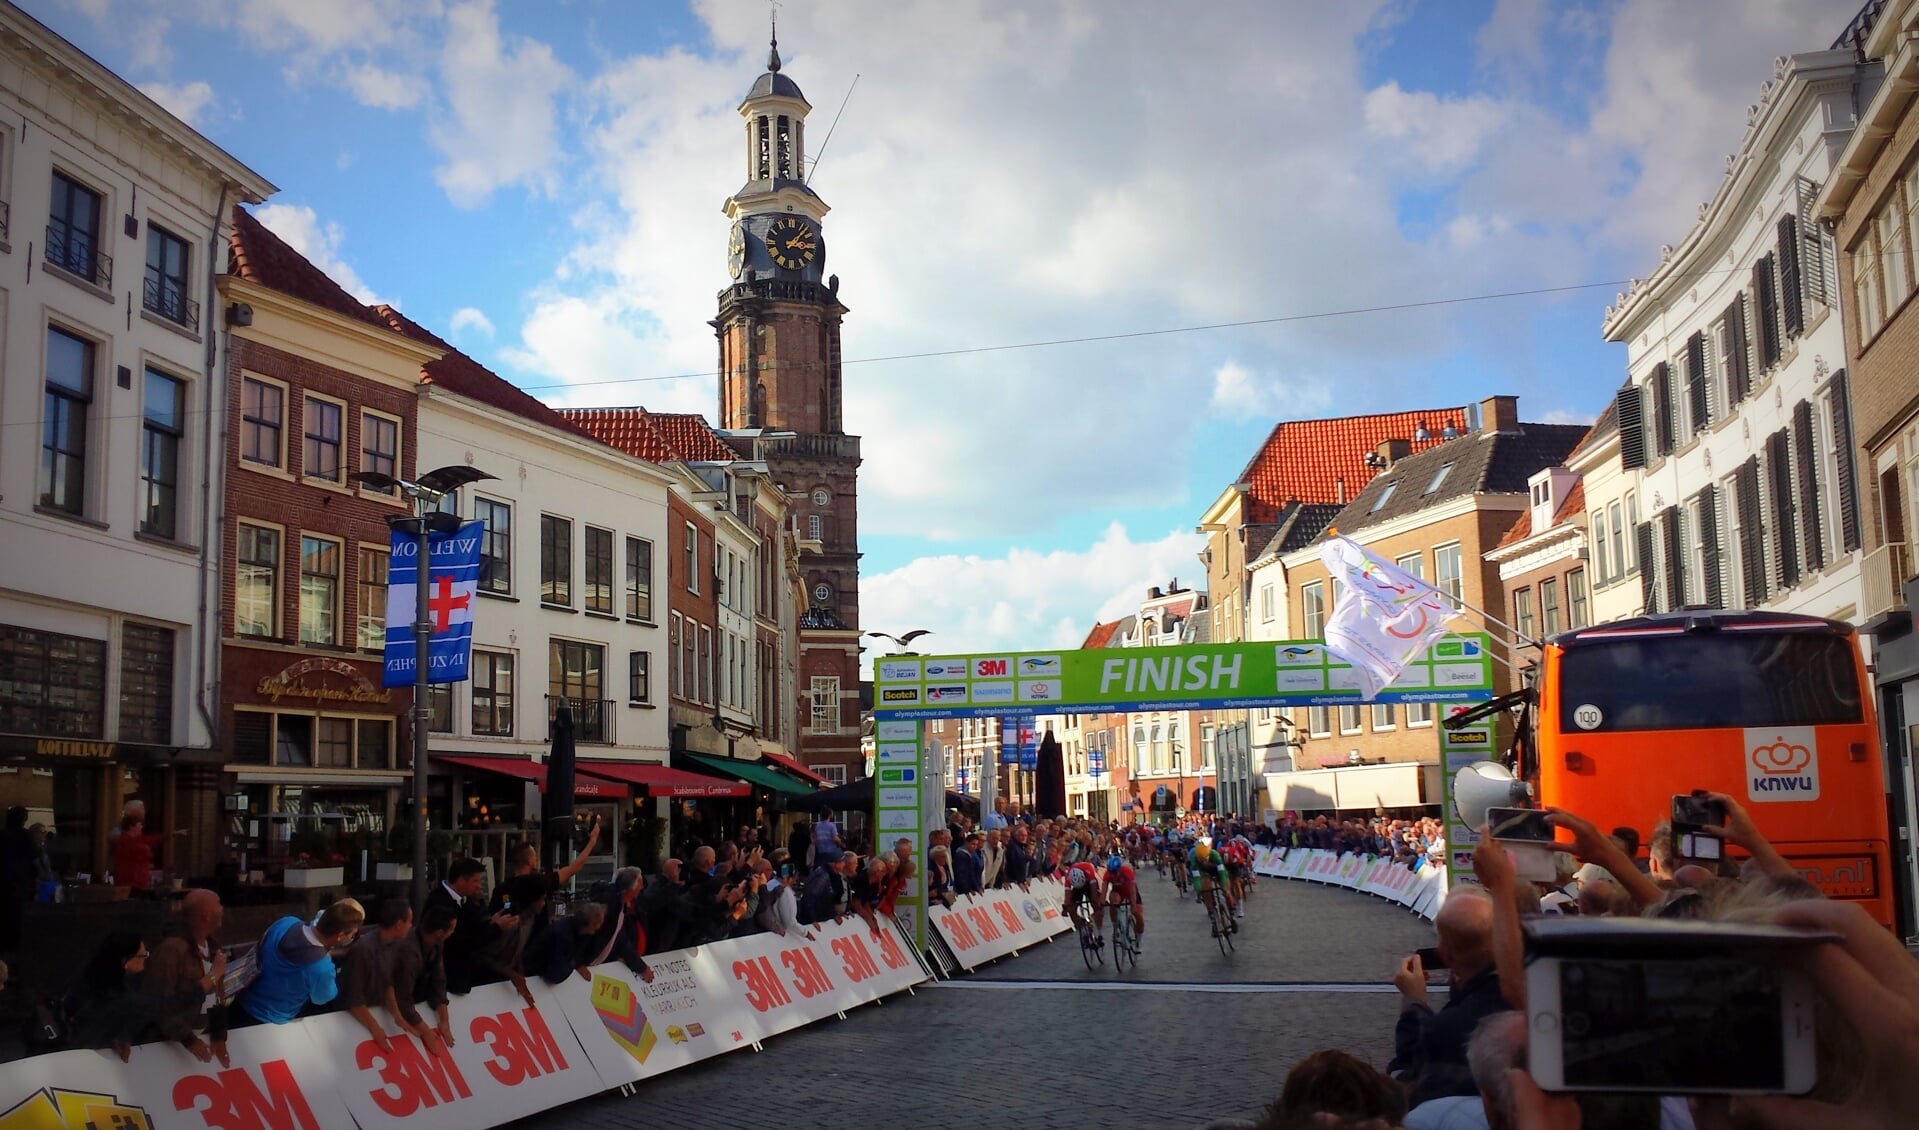 Kristoffer Halvorsen komt als eerste over de finish in Zutphen. Foto: Luuk Stam